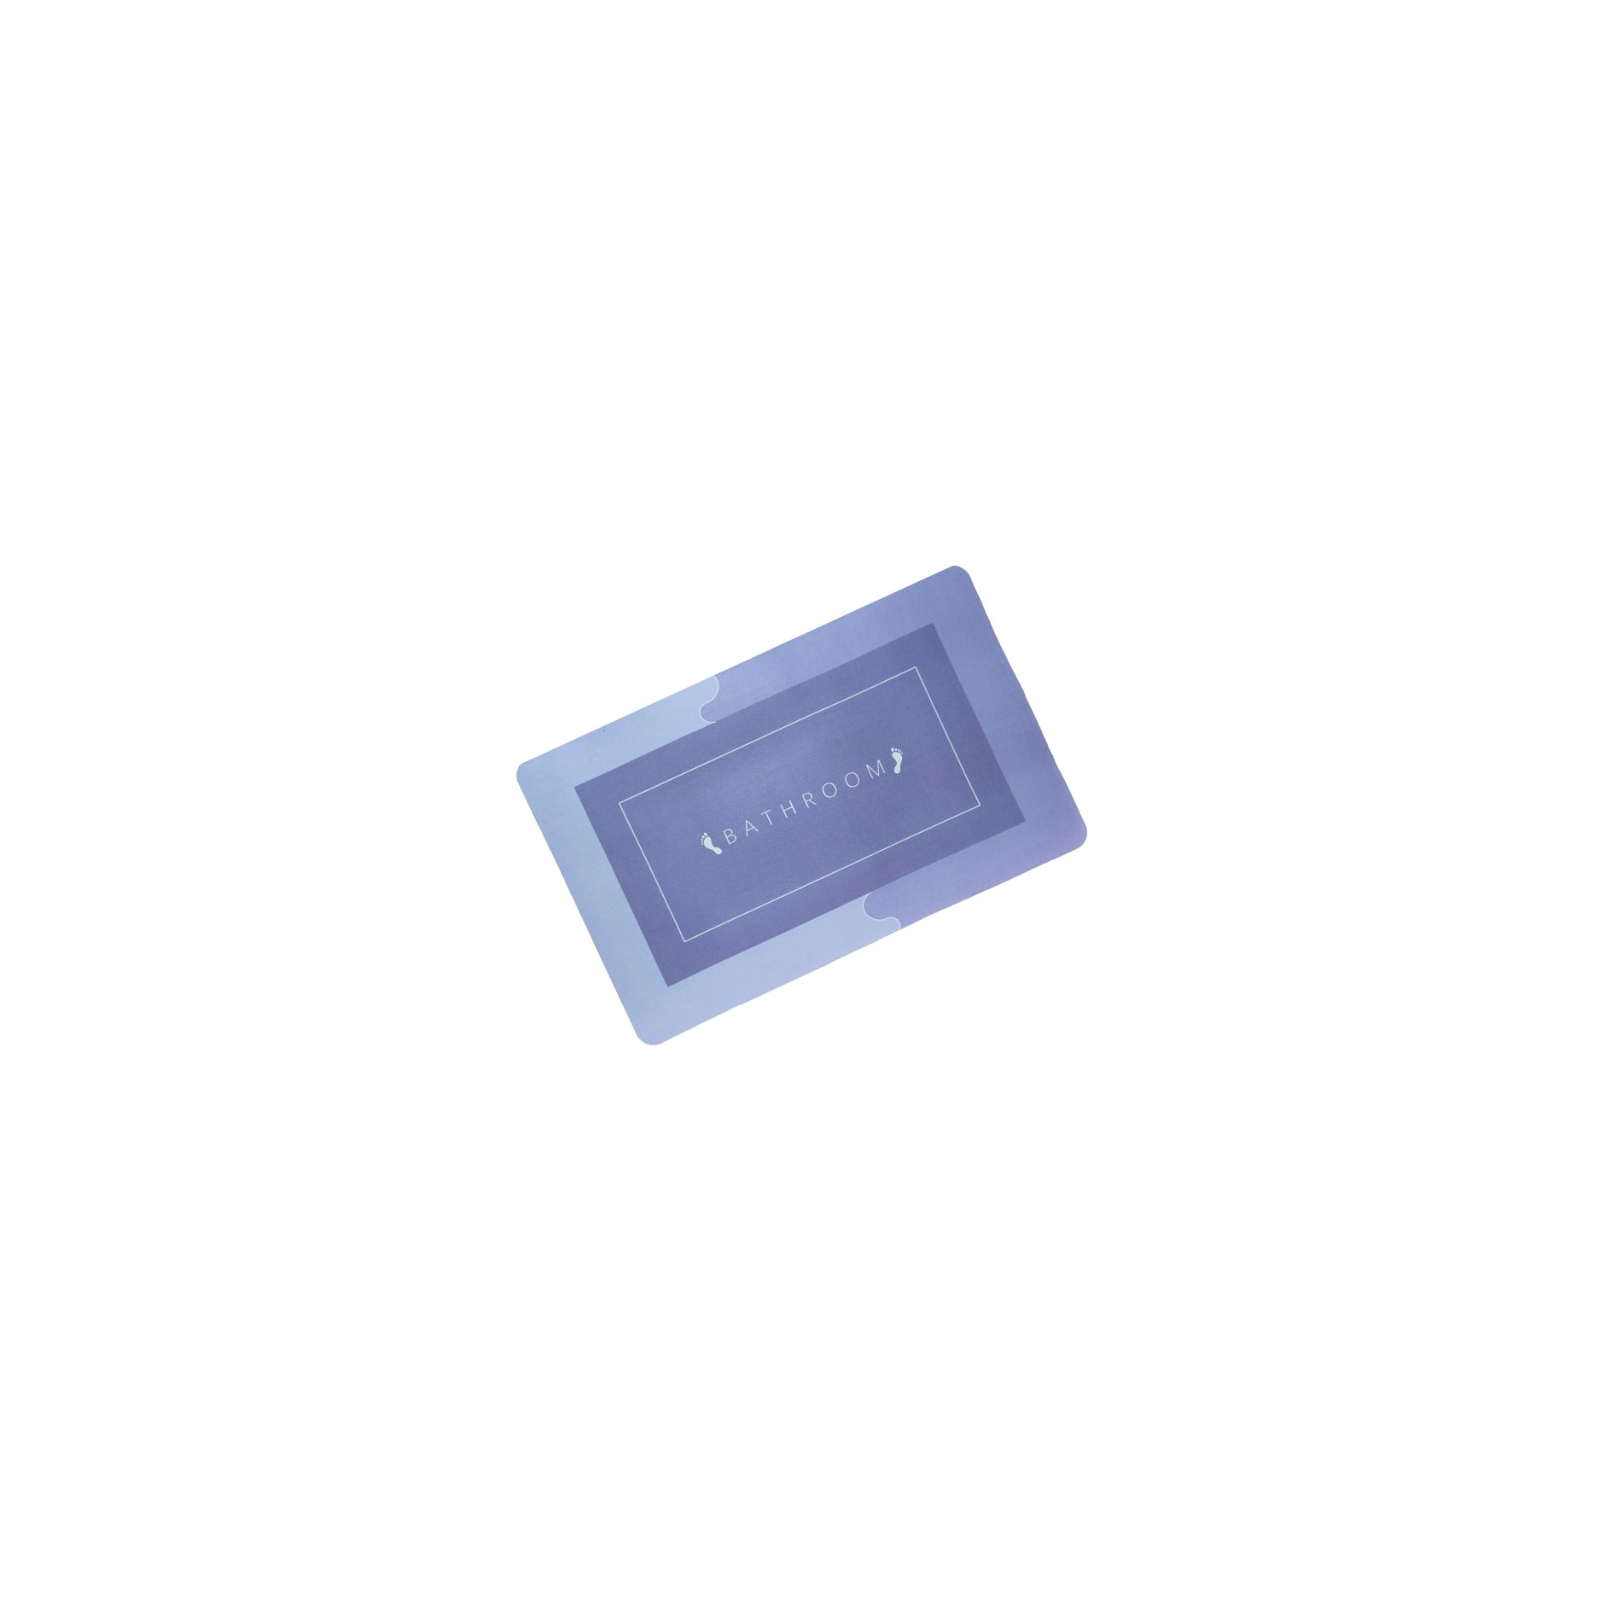 Килимок для ванної Stenson суперпоглинаючий 50 х 80 см прямокутний фіолетовий (R30938 violet)